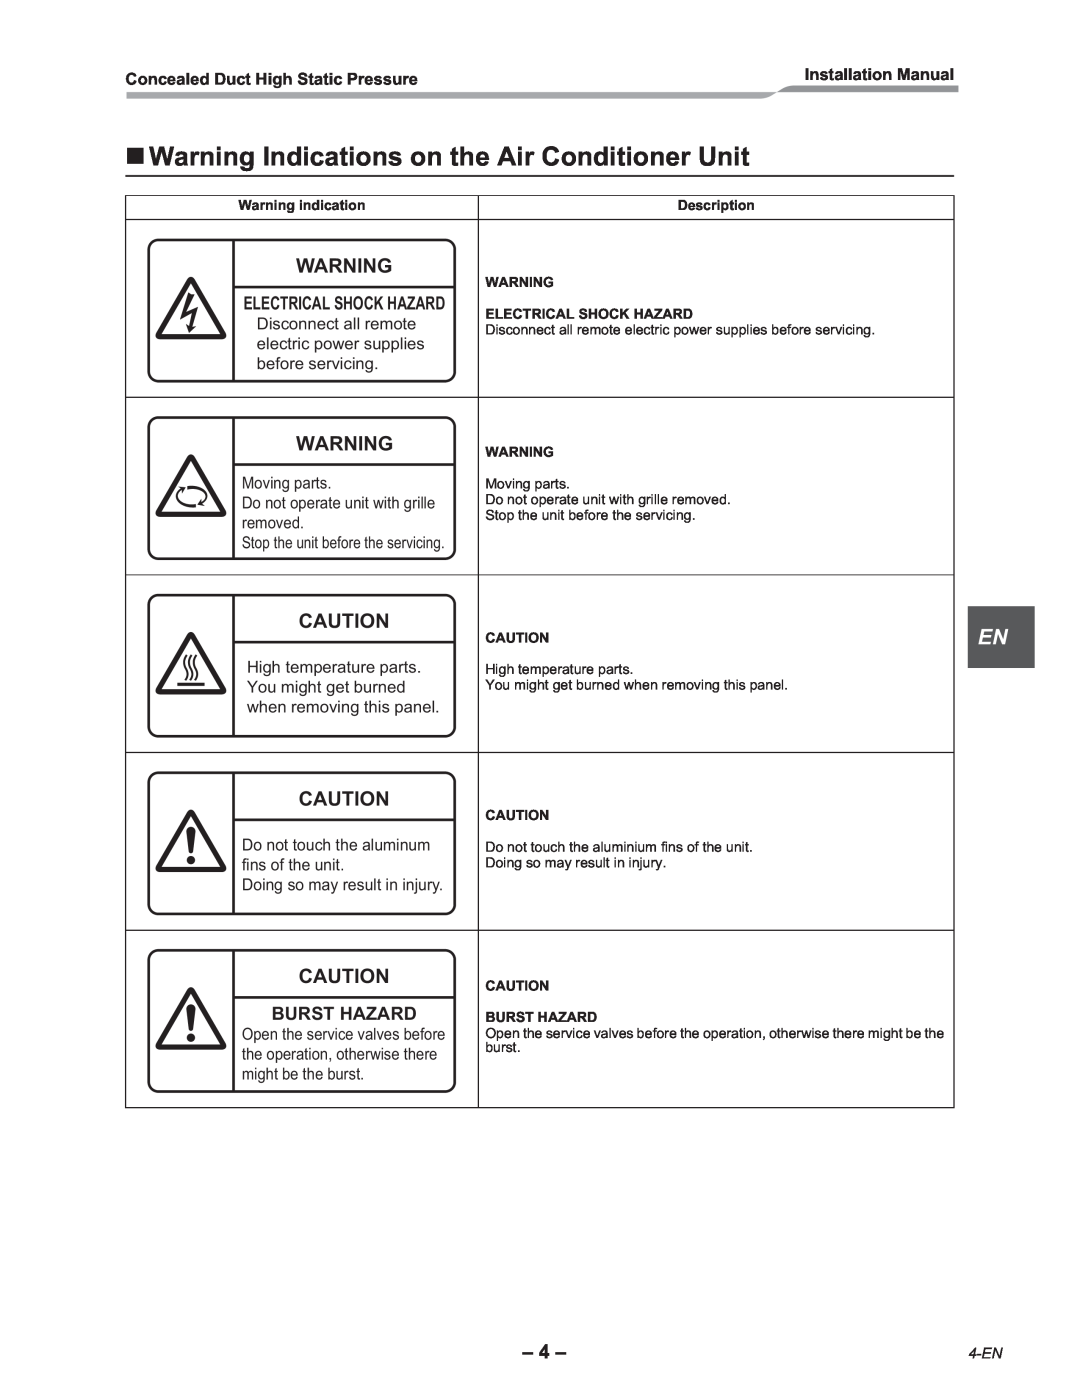 Toshiba RAV-SM2242DT-E, RAV-SM2802DT-E installation manual Warning Indications on the Air Conditioner Unit, Burst Hazard 